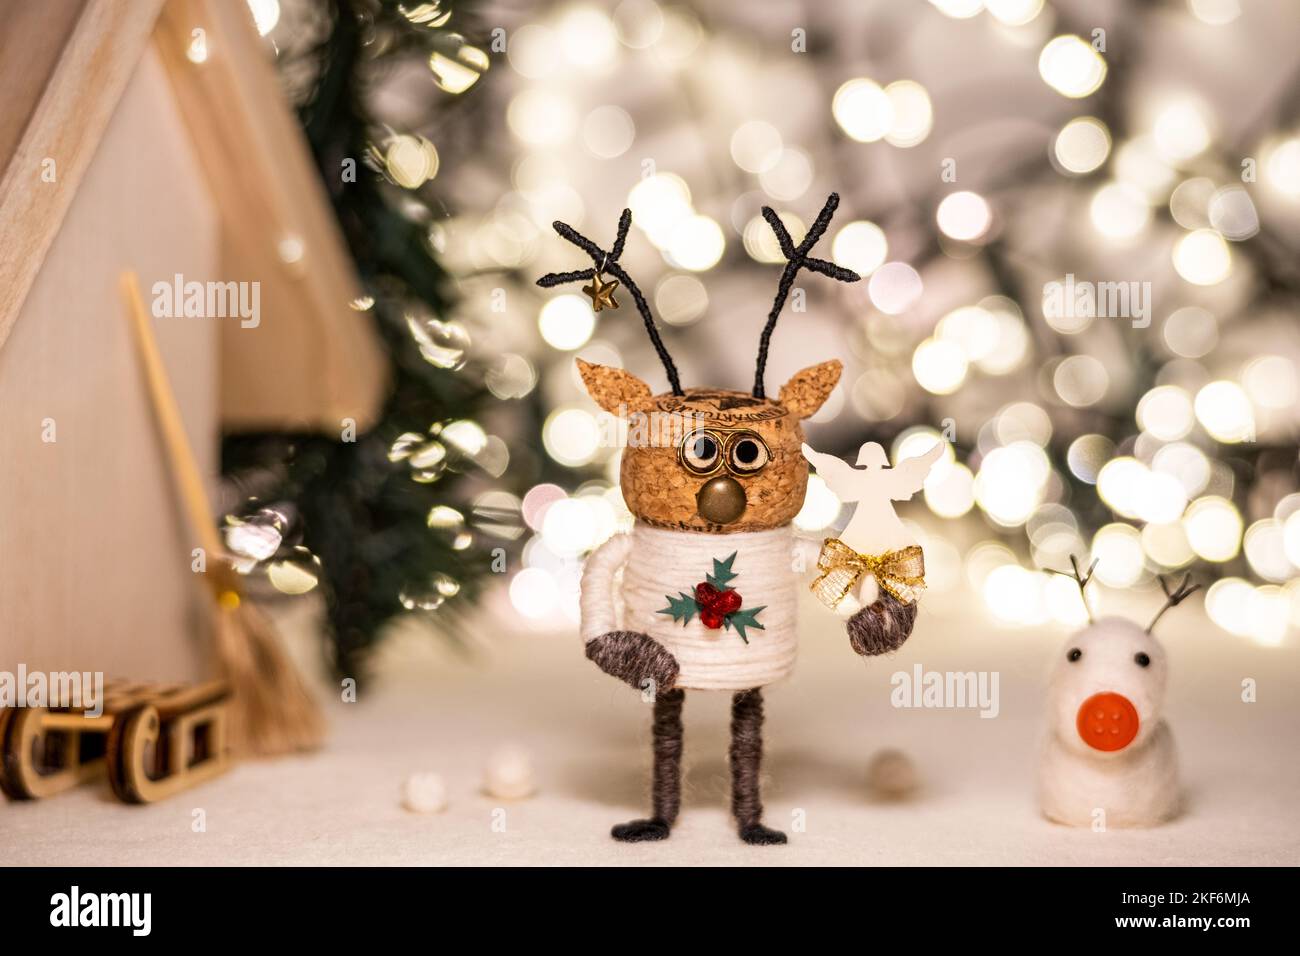 Concetto creativo di Natale concetto creativo di inverno i sugheri di festa i cervi di sughero concetto della figura del cervo del sughero le luci intime di Natale Foto Stock